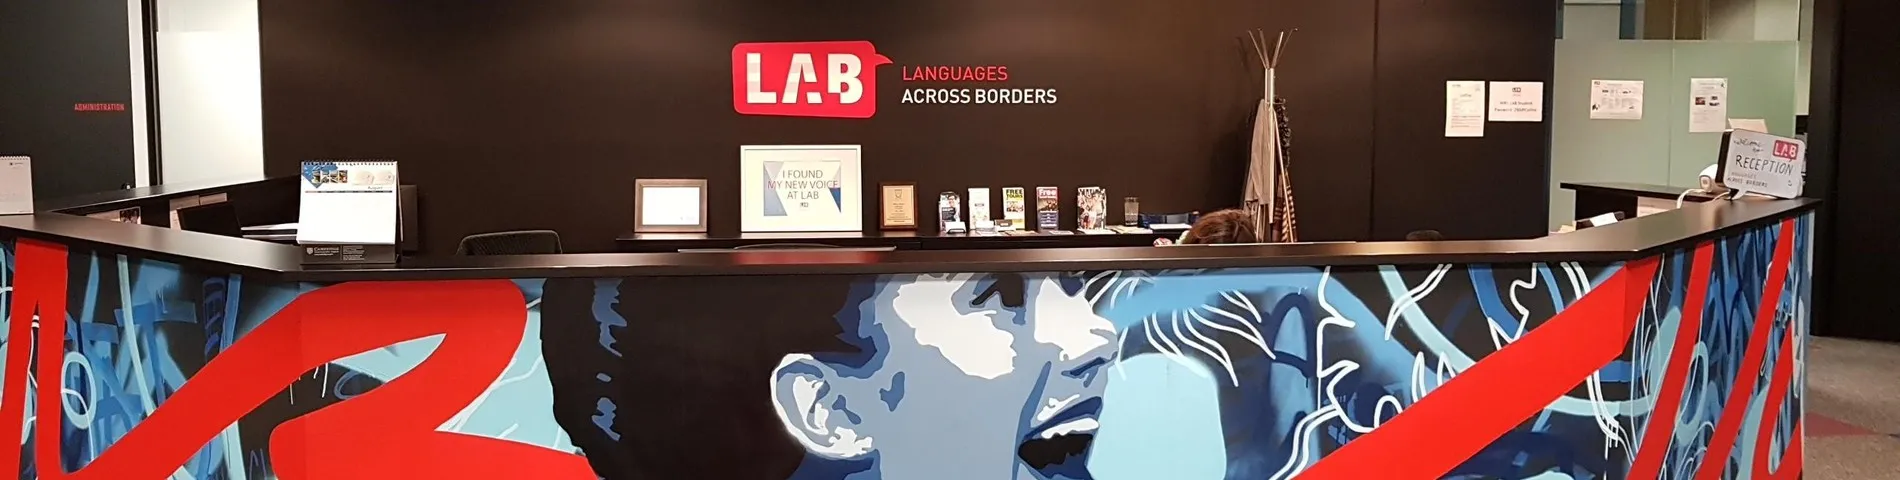 LAB - Languages Across Borders kép 1